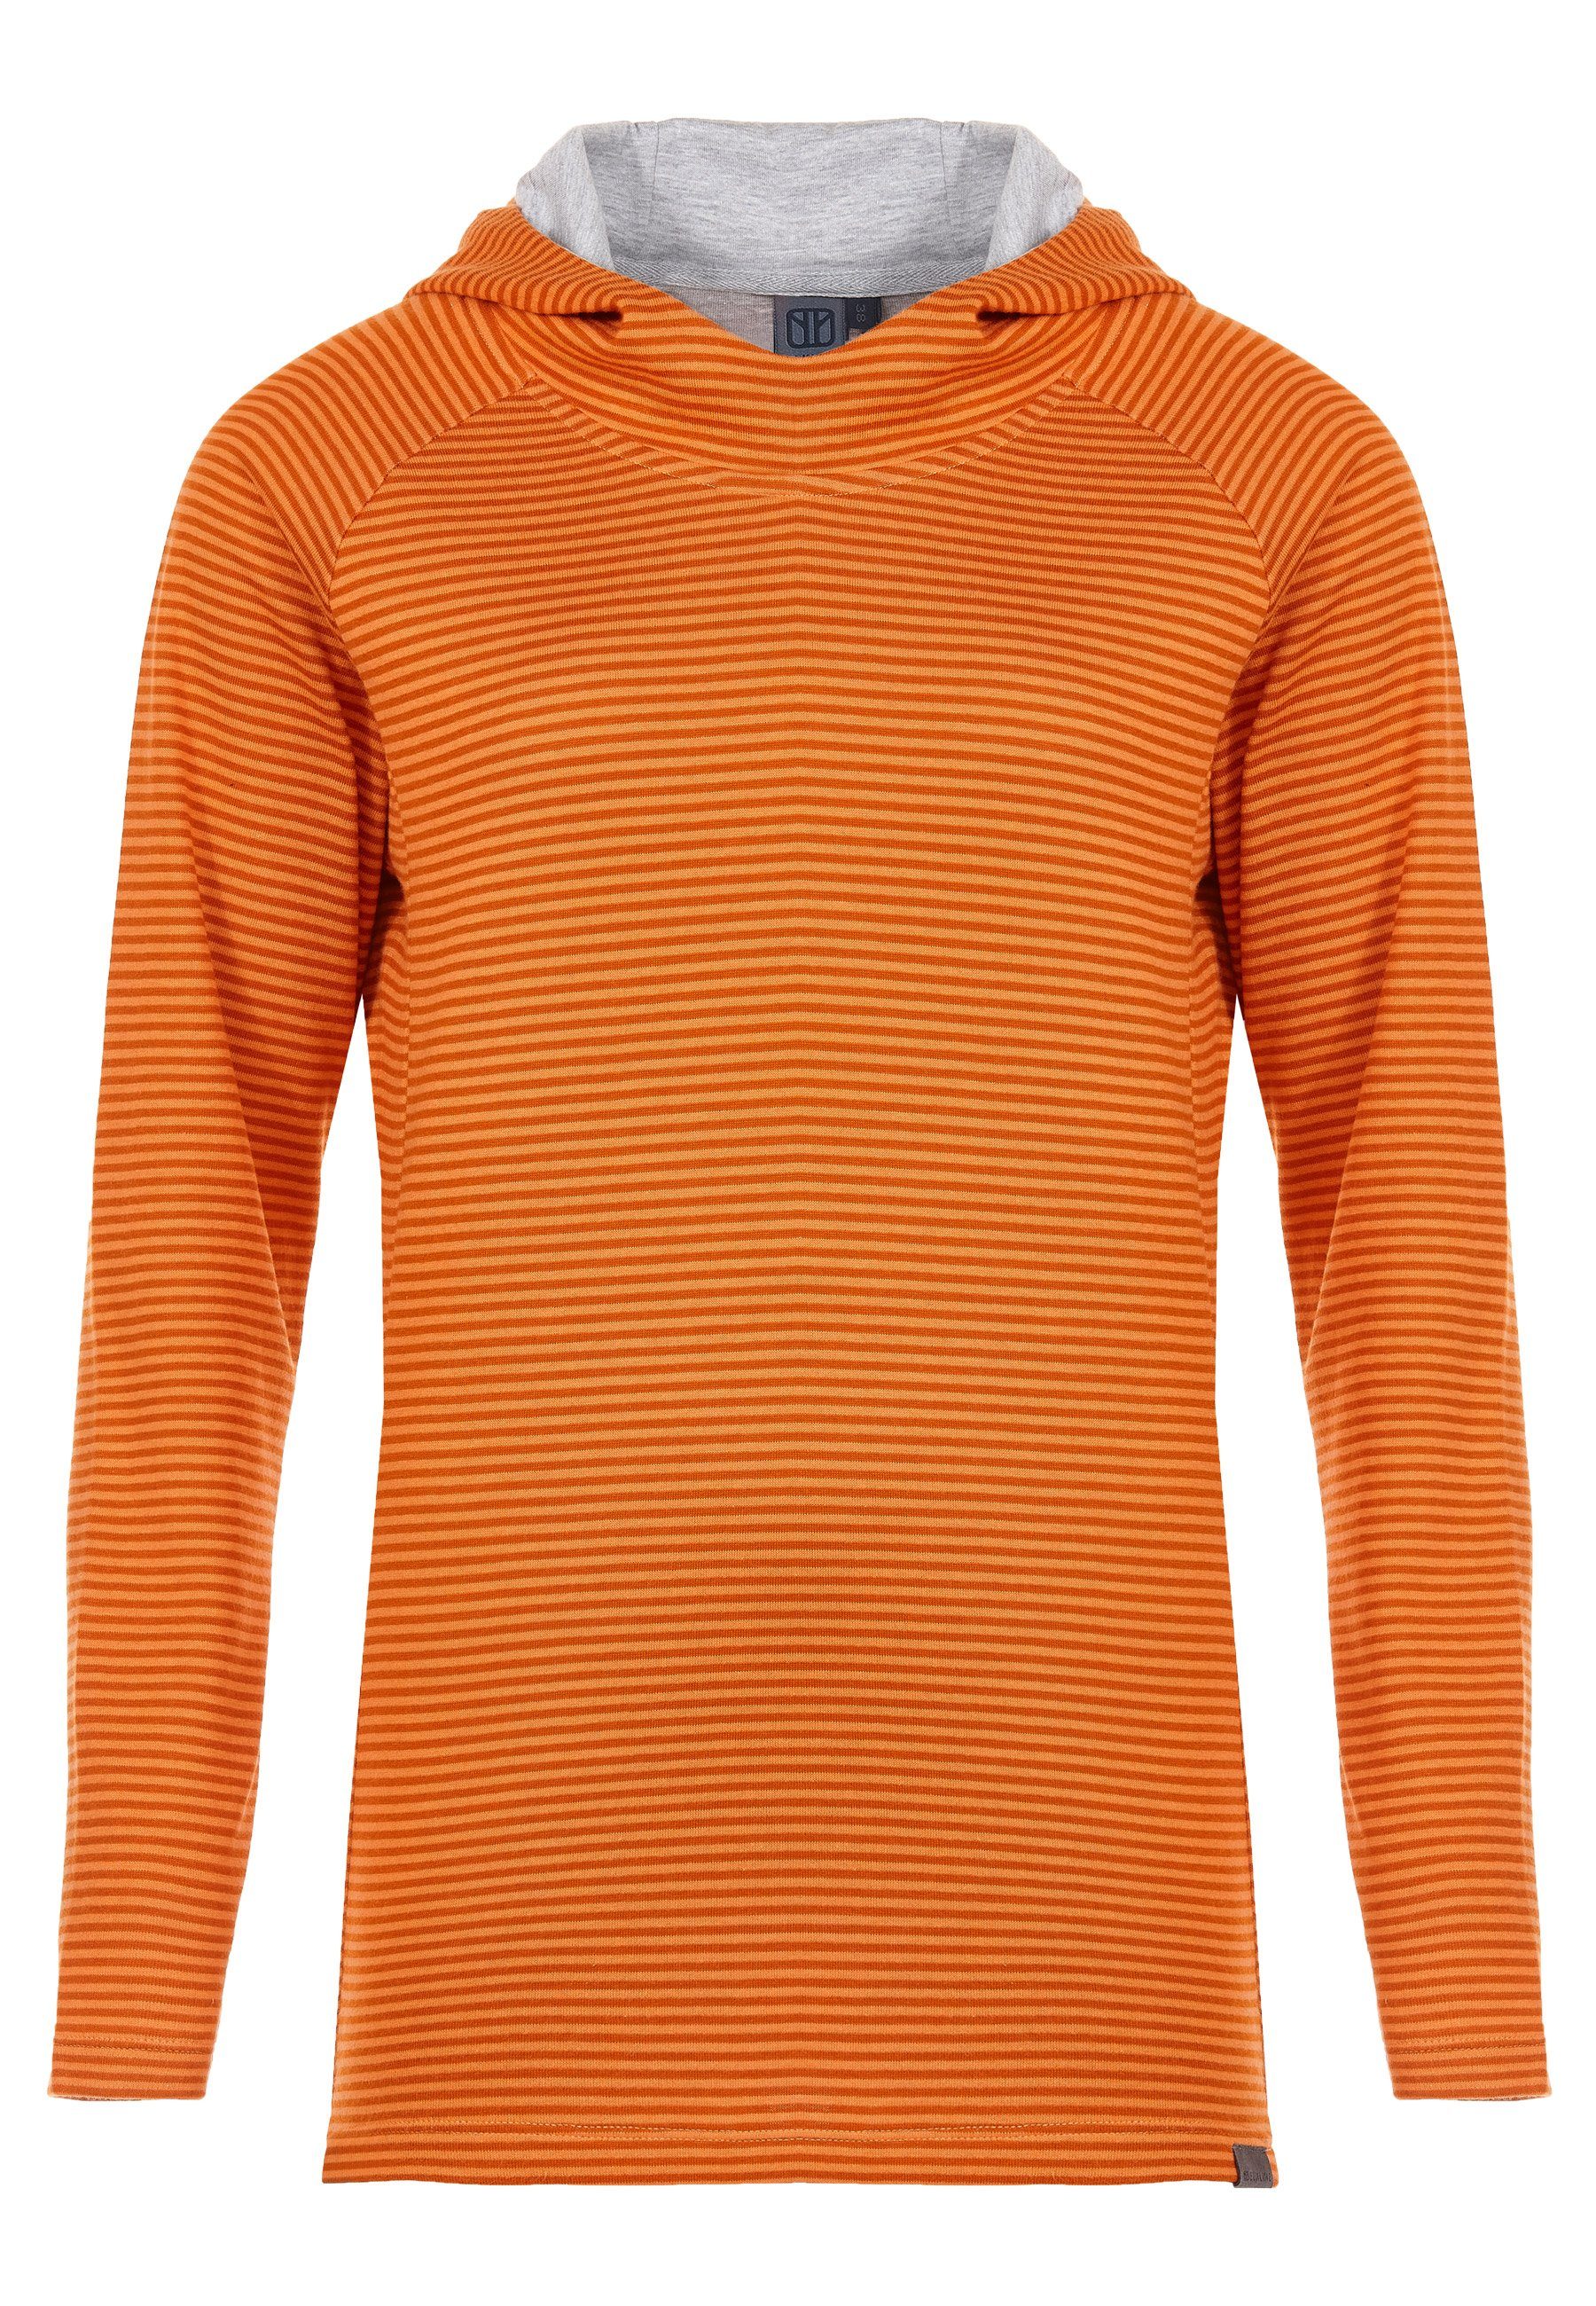 Elkline Hoodie Sweater Wetter Streifen Kapuzenpullover leicht tailliert darkorange - mandarin